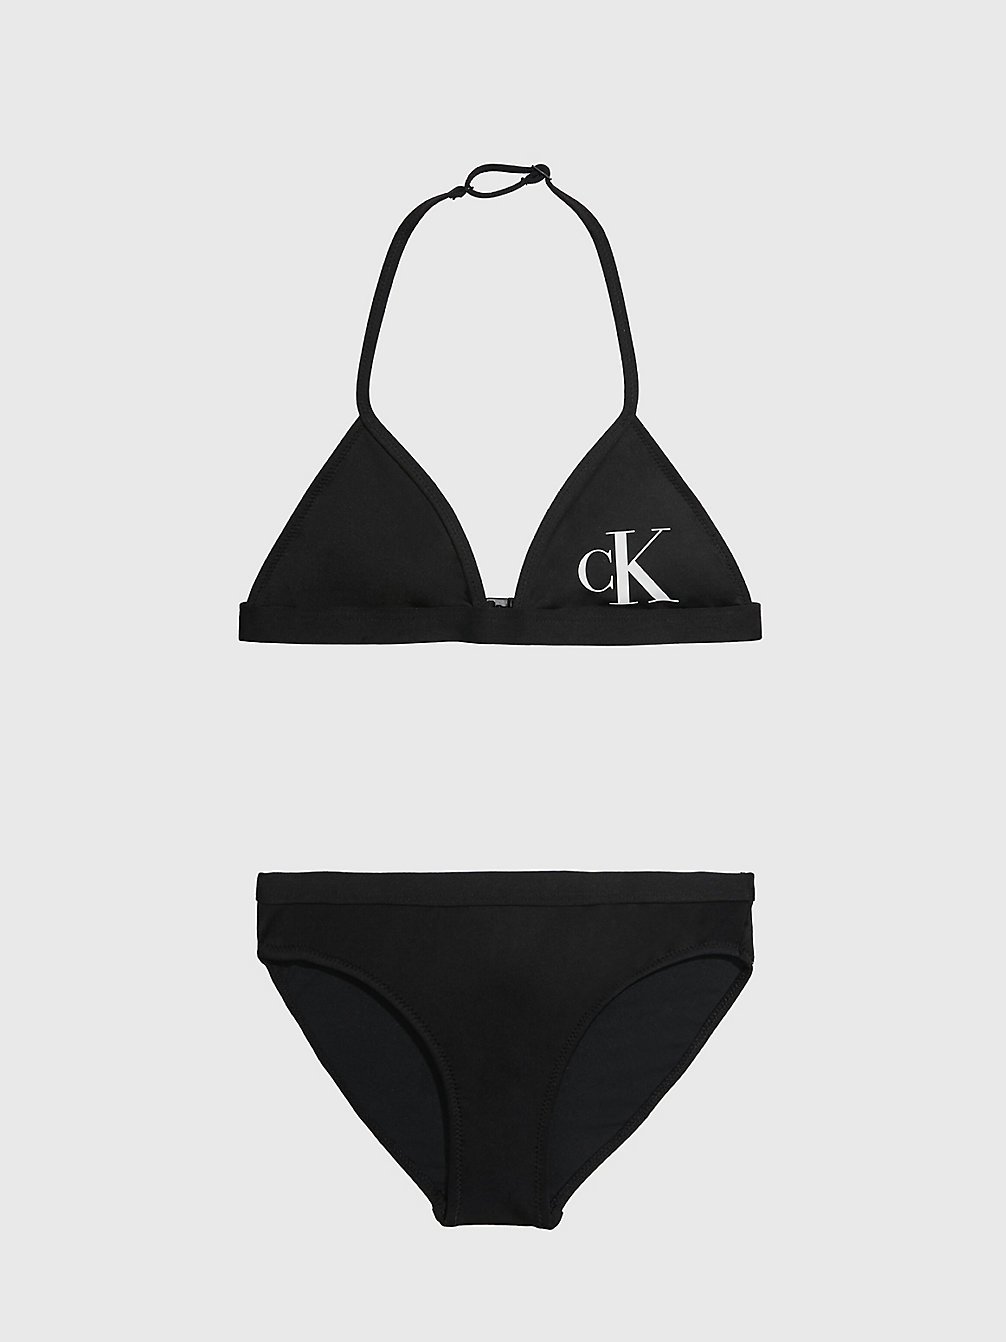 PVH BLACK Bikini-Set Mit Triangel-Top Für Mädchen - CK Monogram undefined Maedchen Calvin Klein